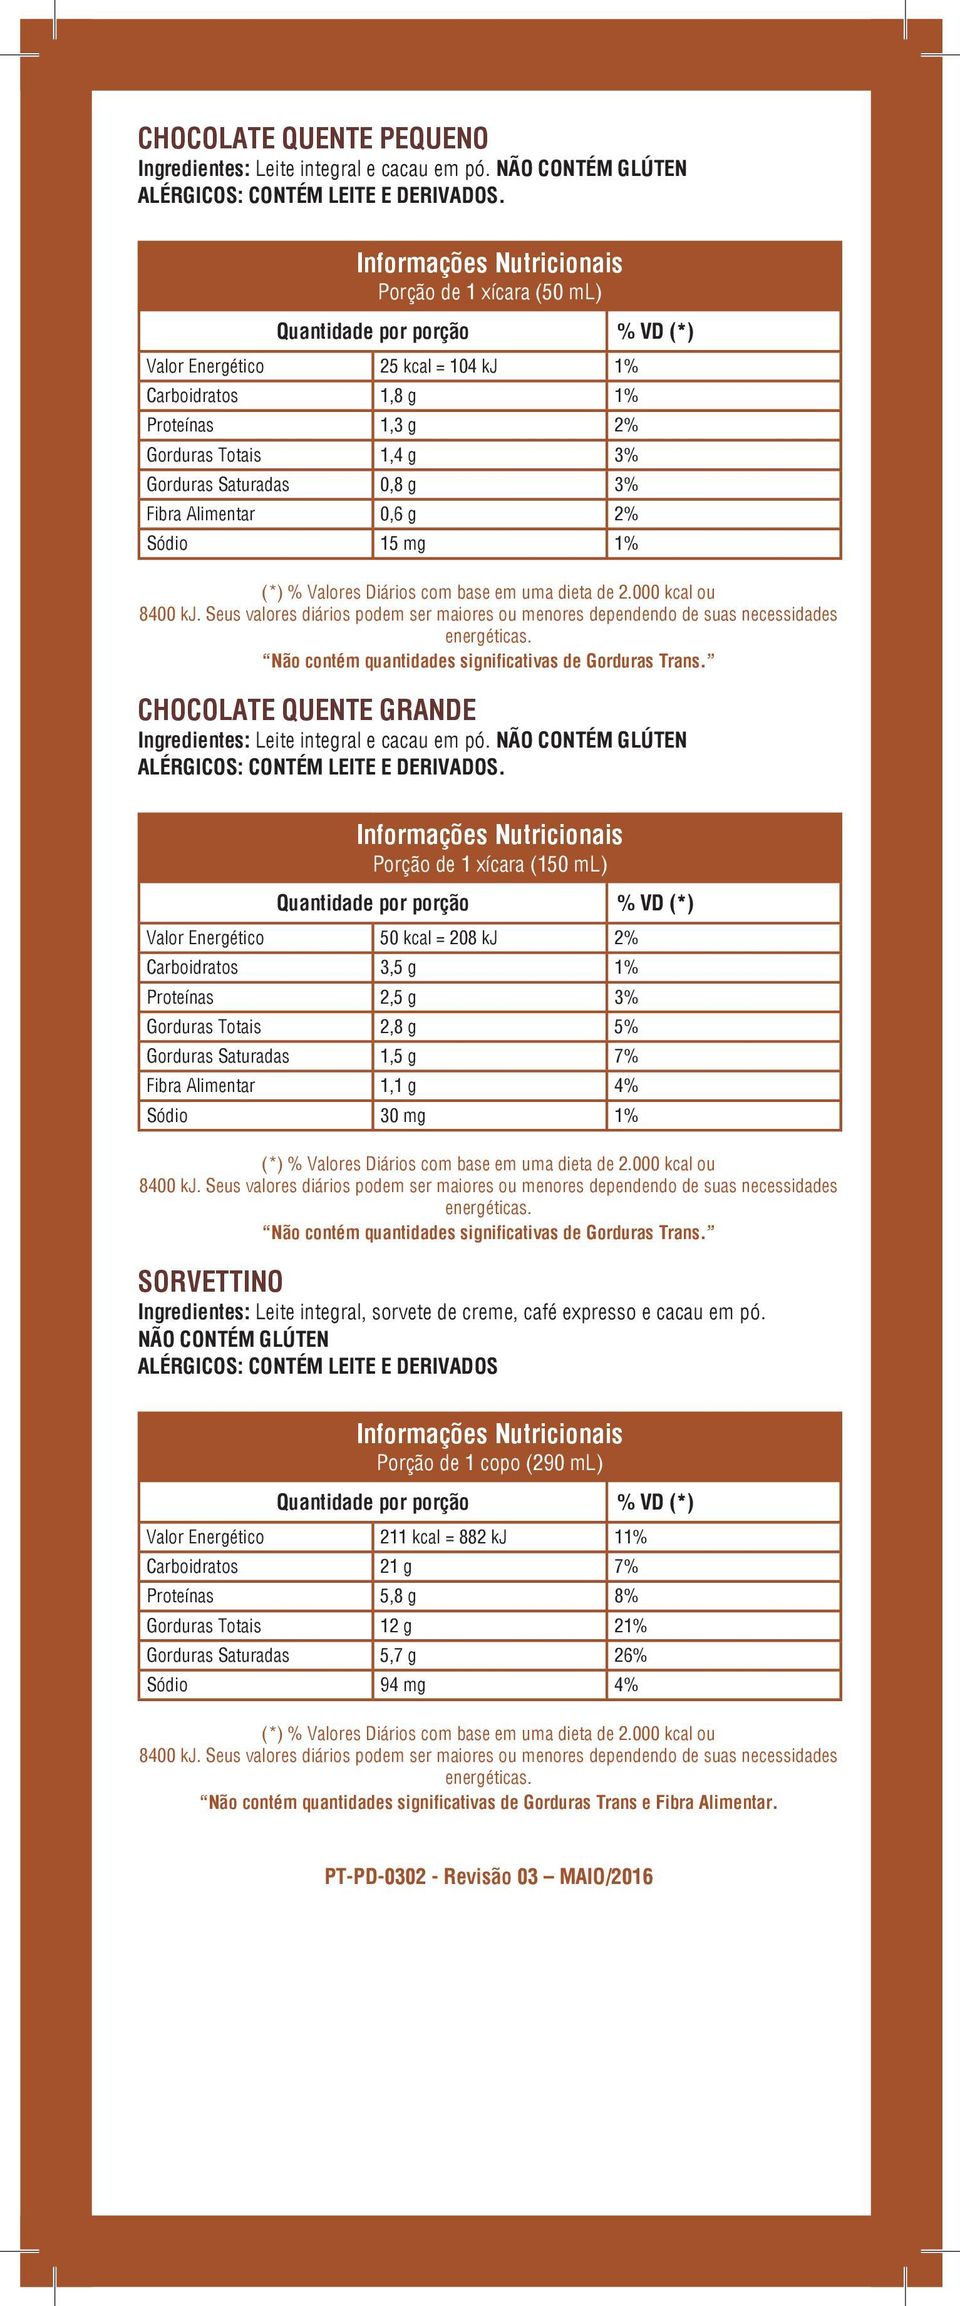 2% Sódio 15 mg 1% Não contém quantidades significativas de Gorduras Trans. CHOCOLATE QUENTE GRANDE Ingredientes: Leite integral e cacau em pó.